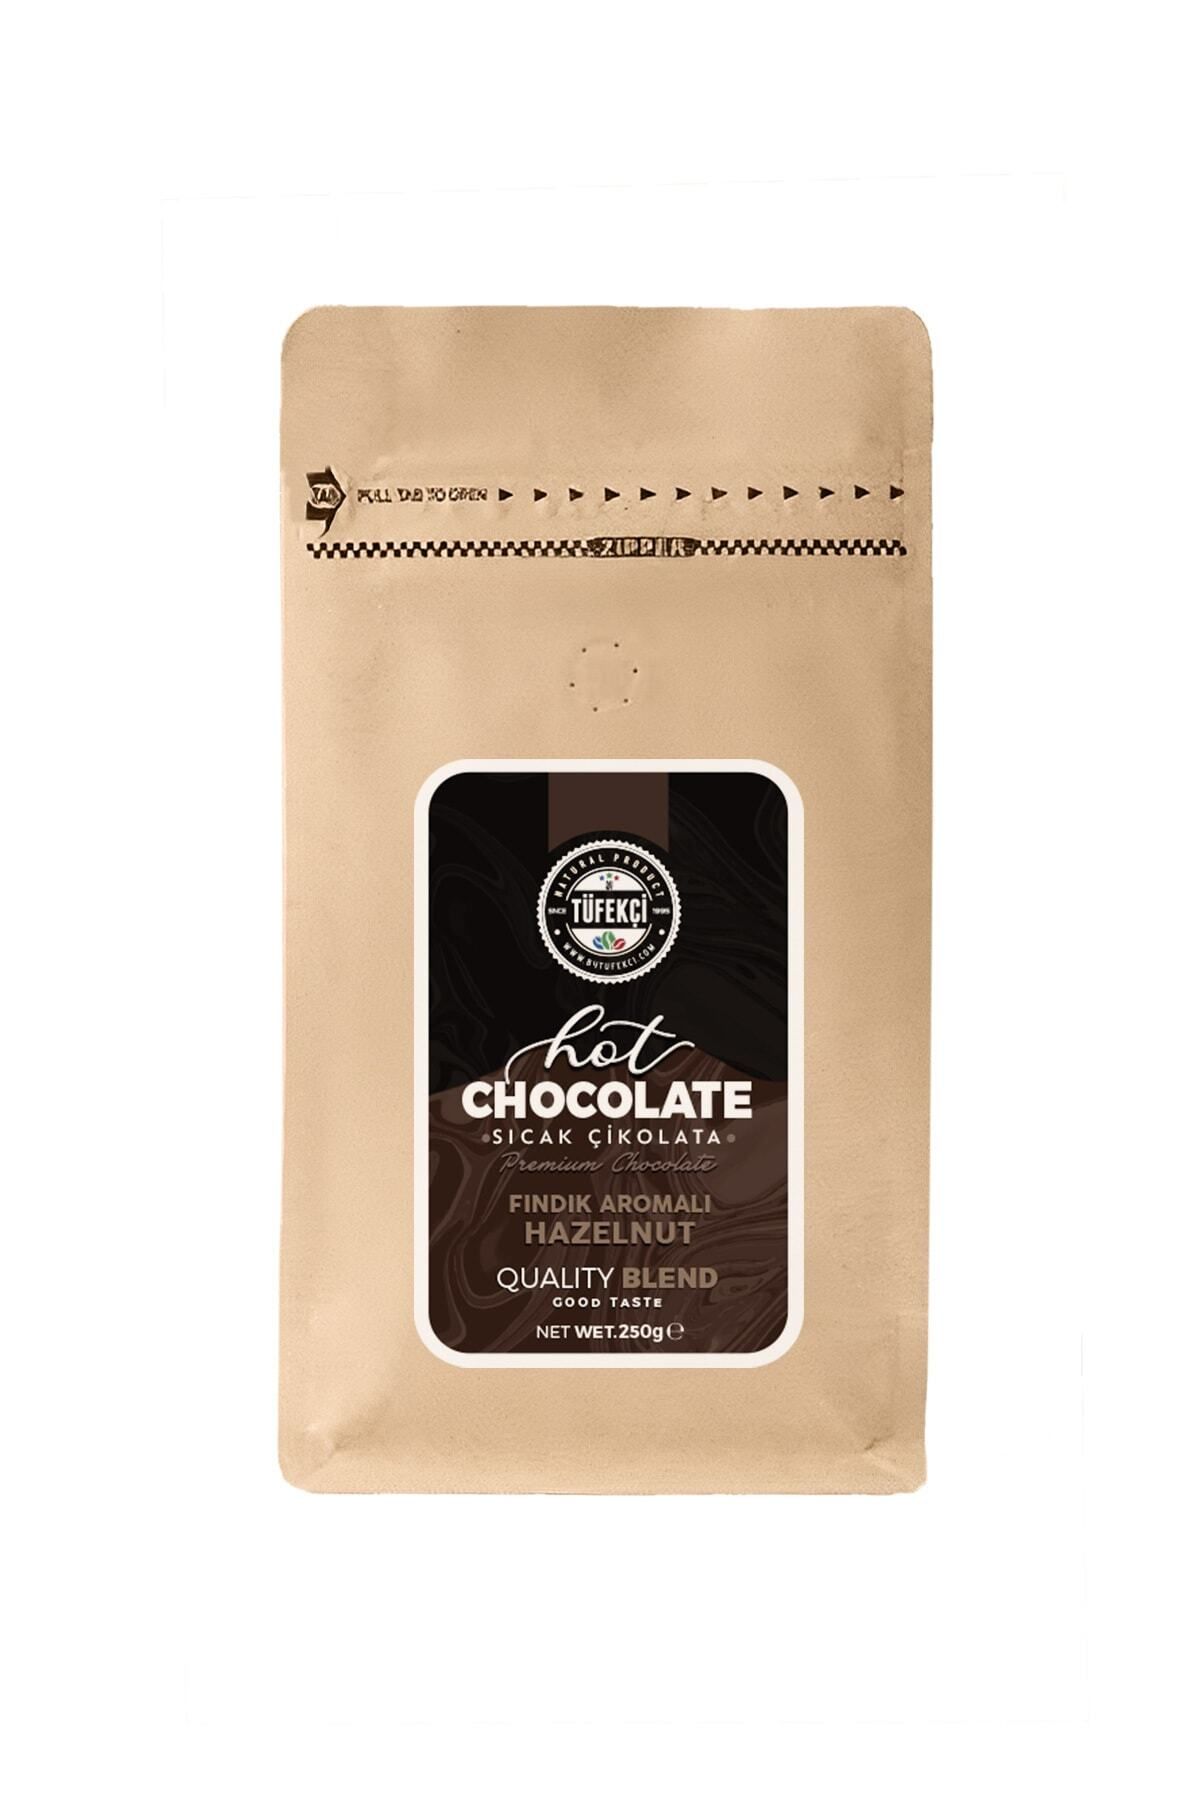 By Tüfekçi Fındık Aromalı Sıcak Çikolata Gerçek Şeker Gerçek Kakao 10 Bardak 250 gr